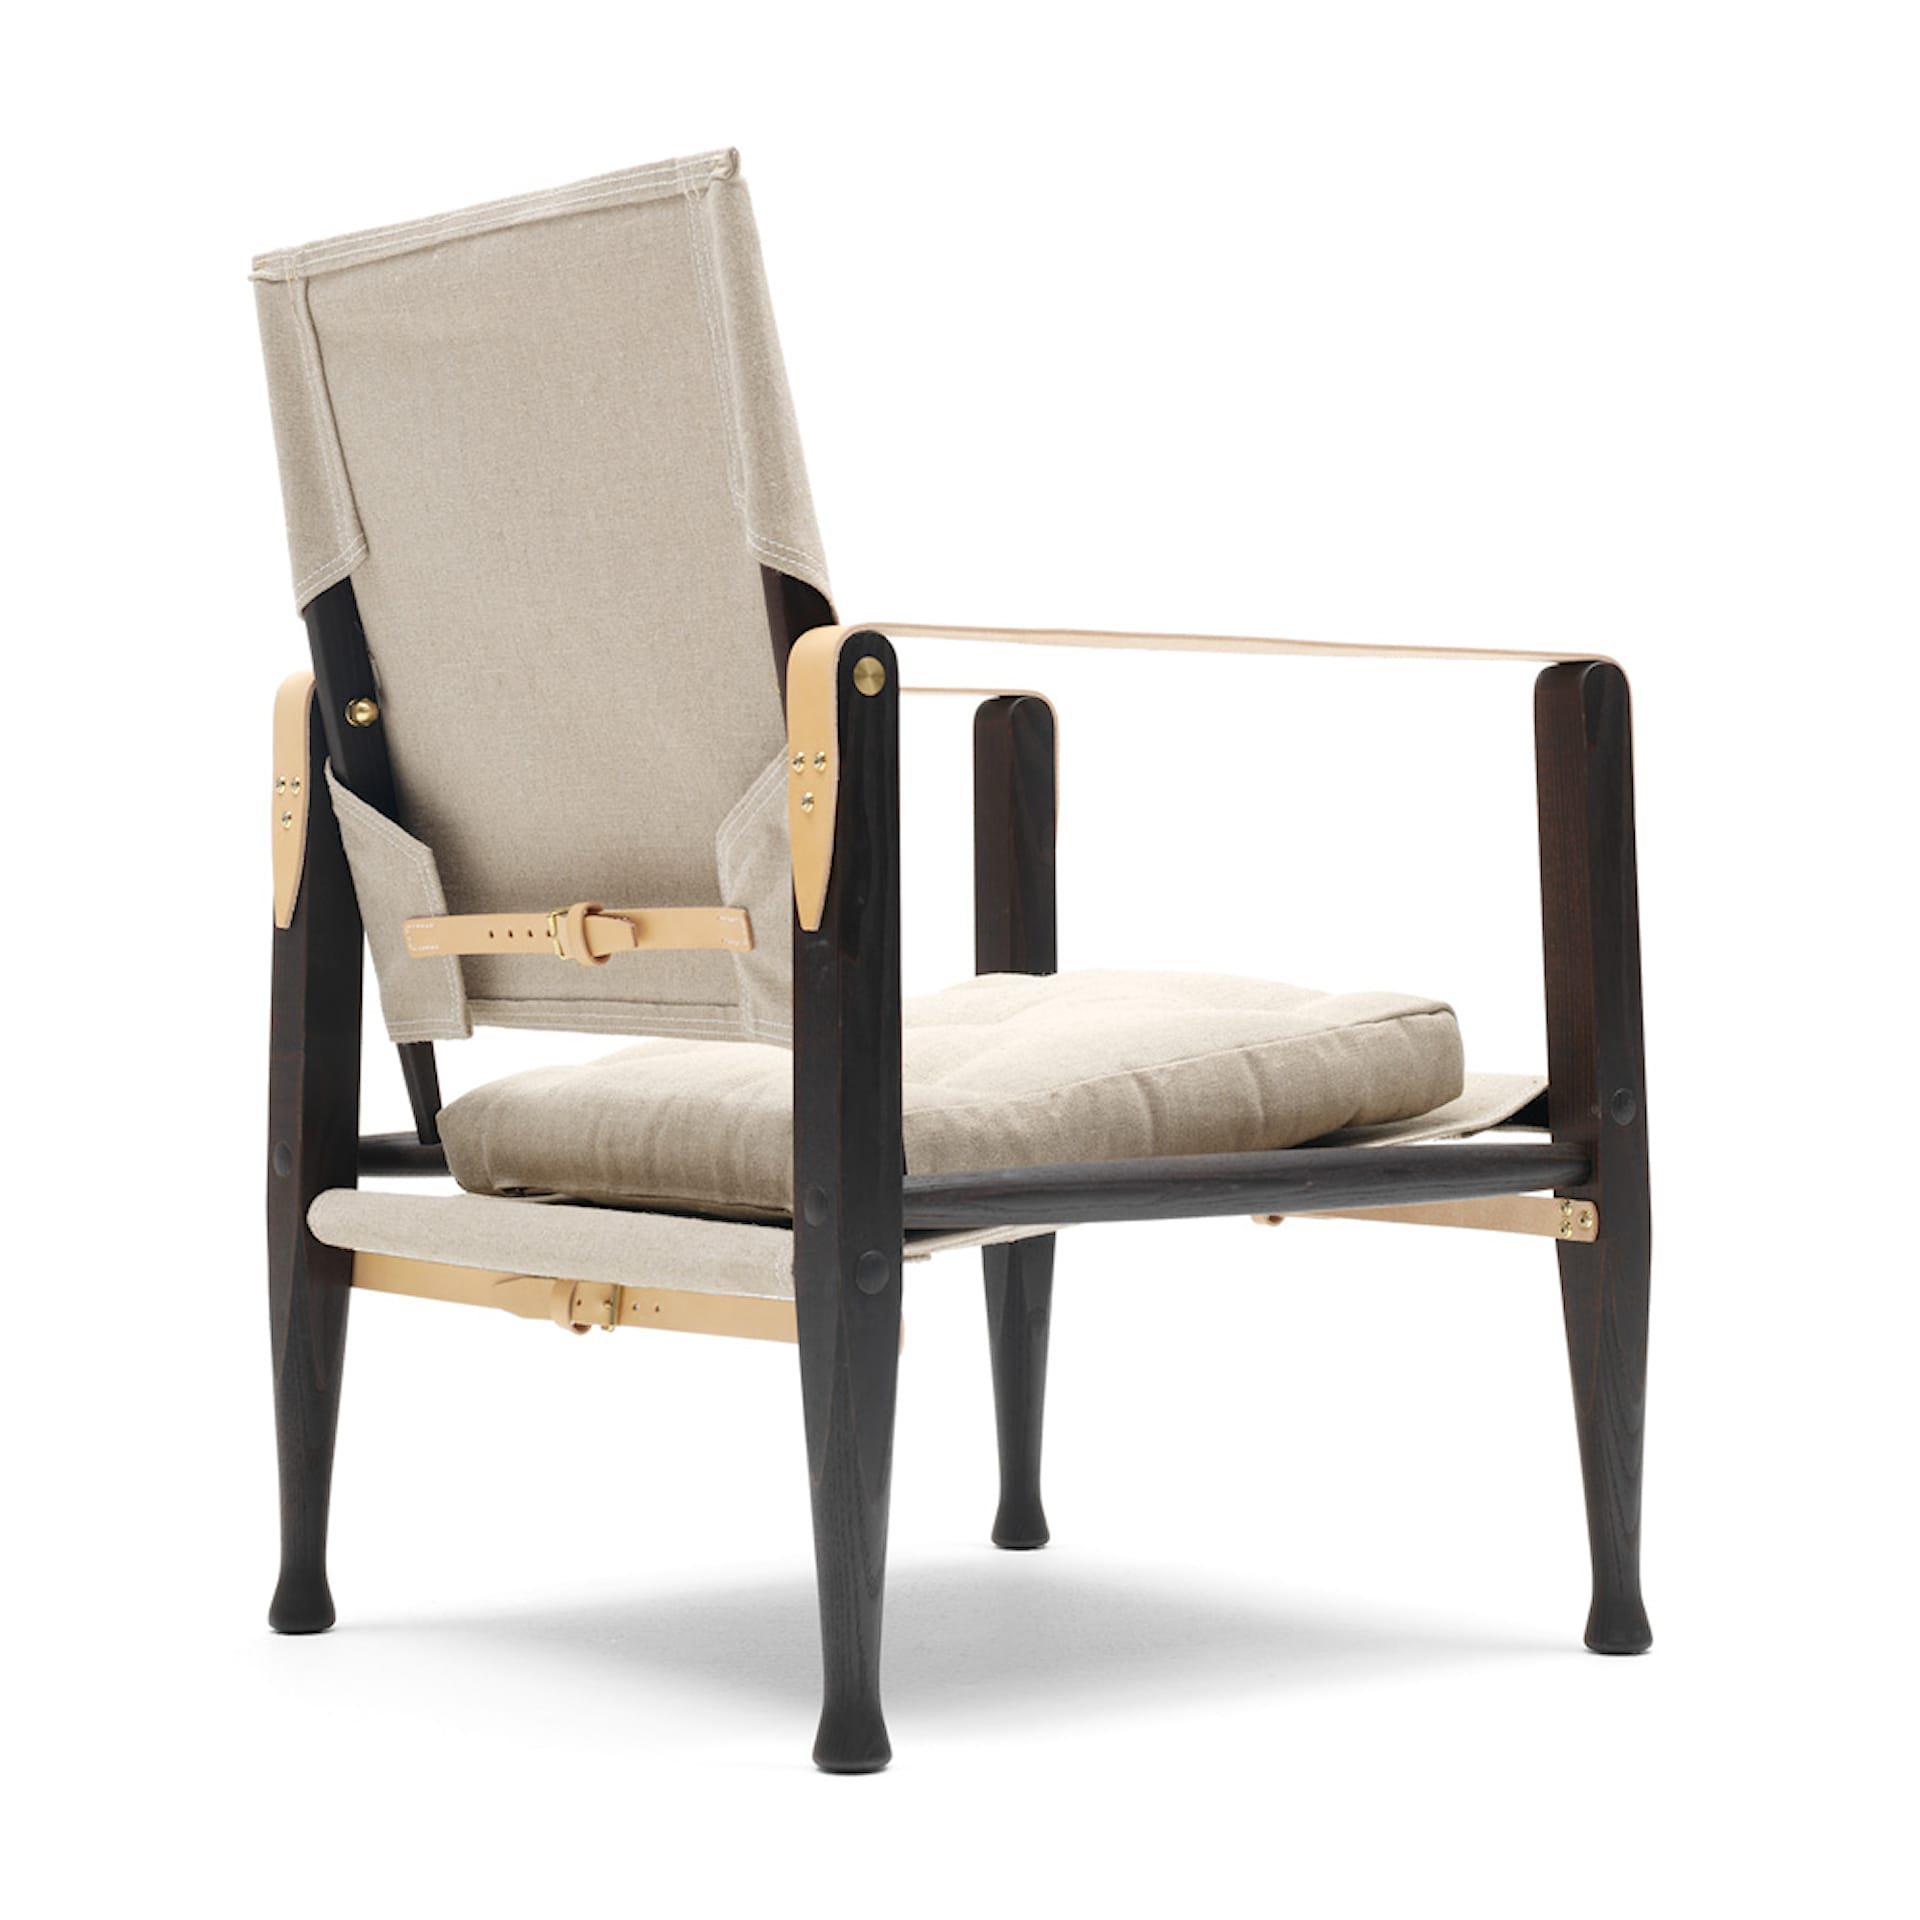 KK47000 Safari Chair - Carl Hansen - NO GA